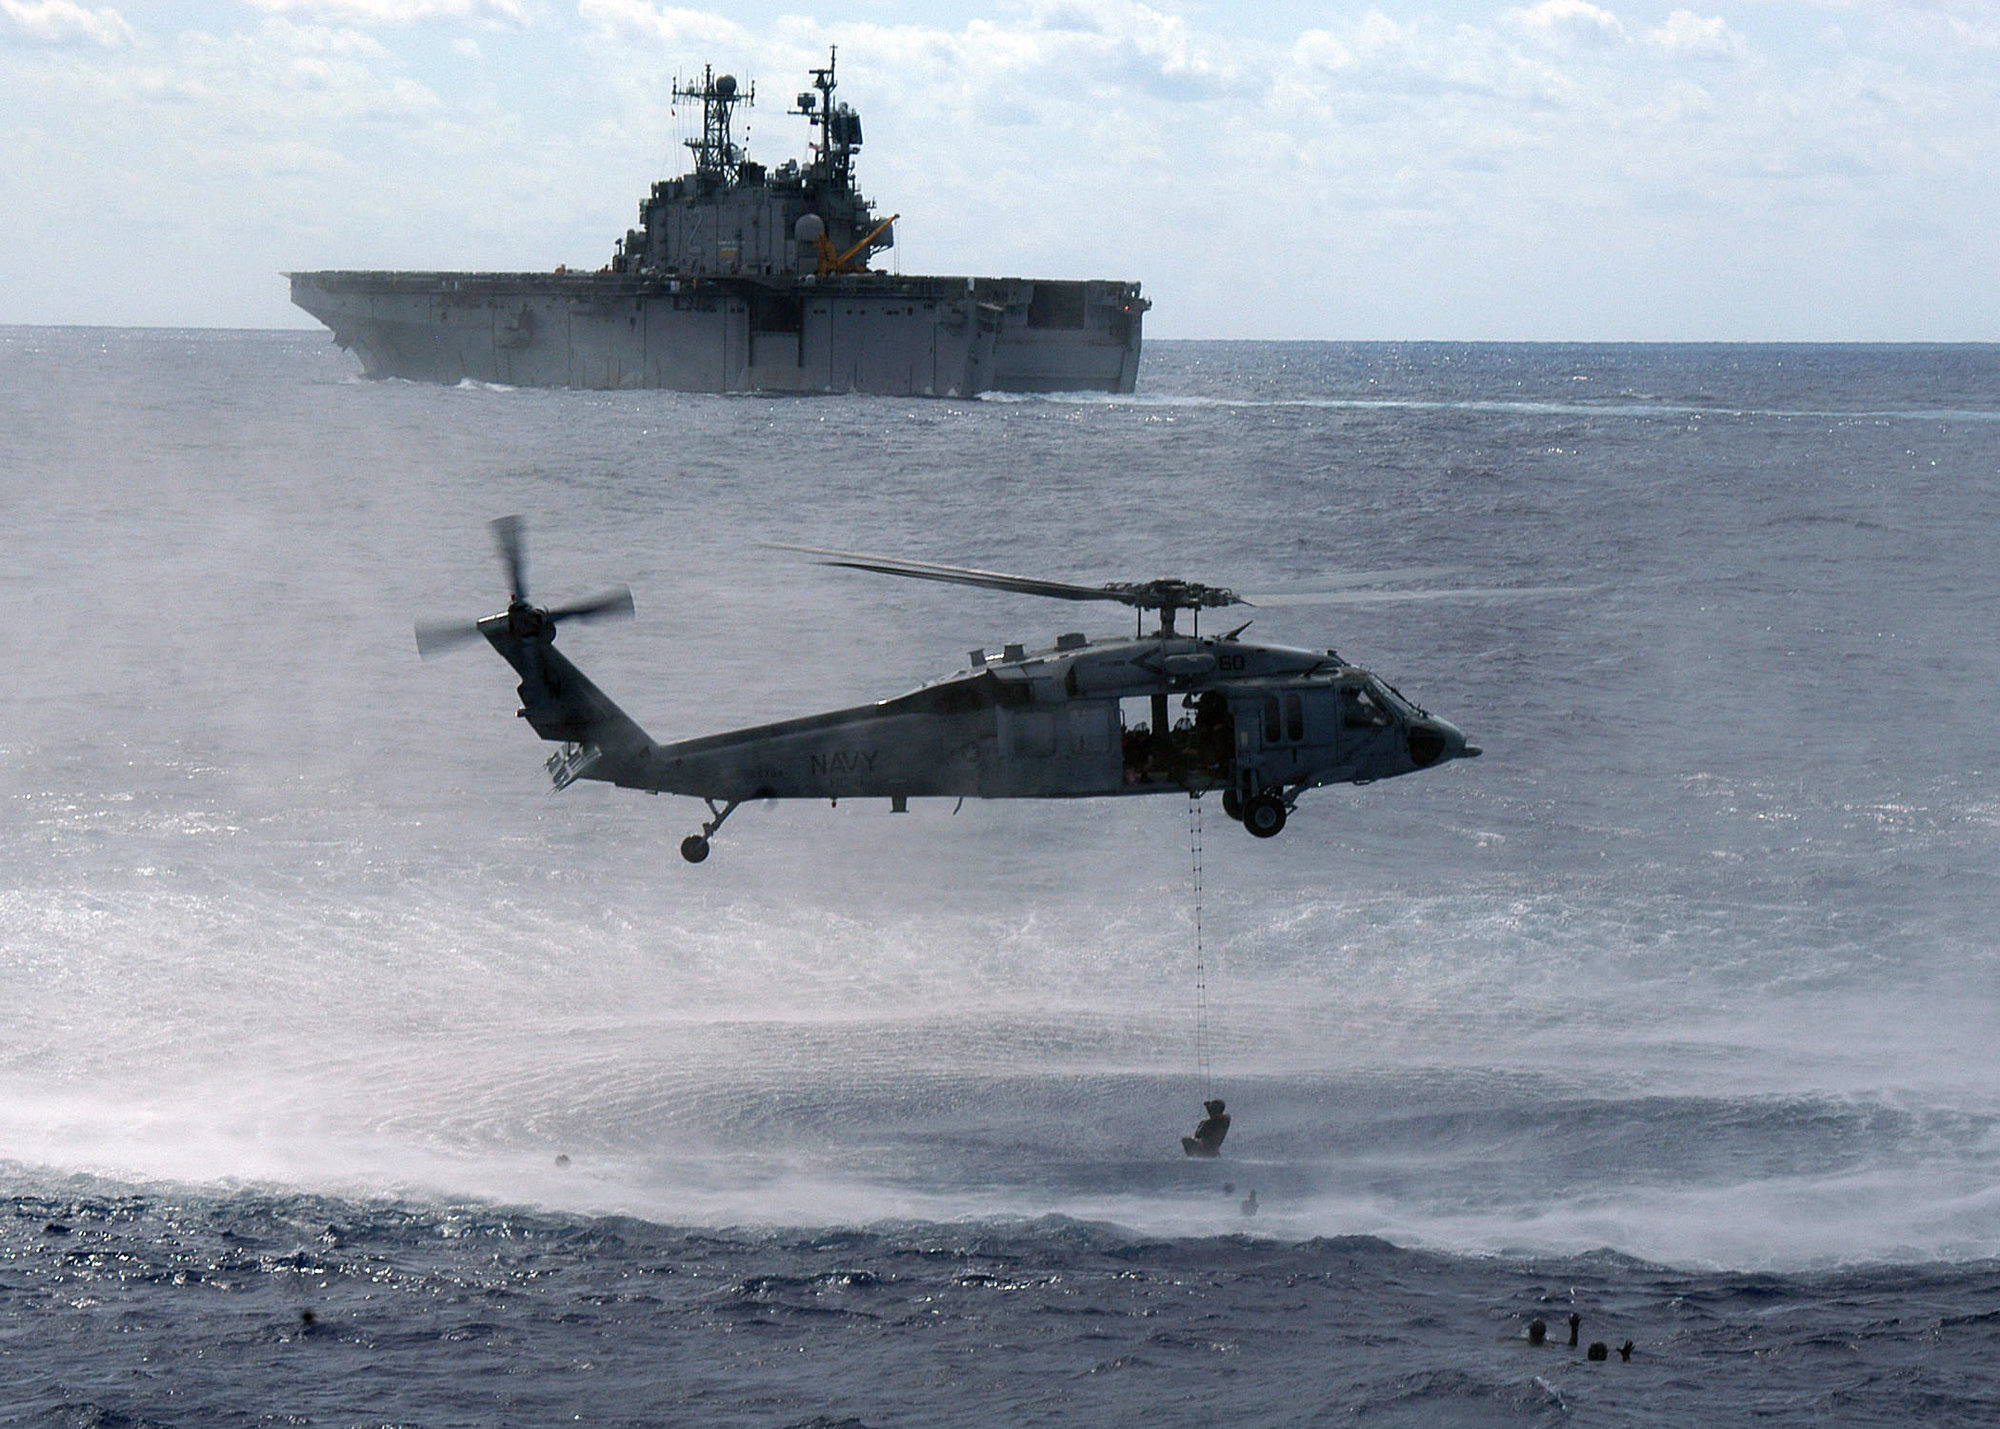 MH-60S.jpg